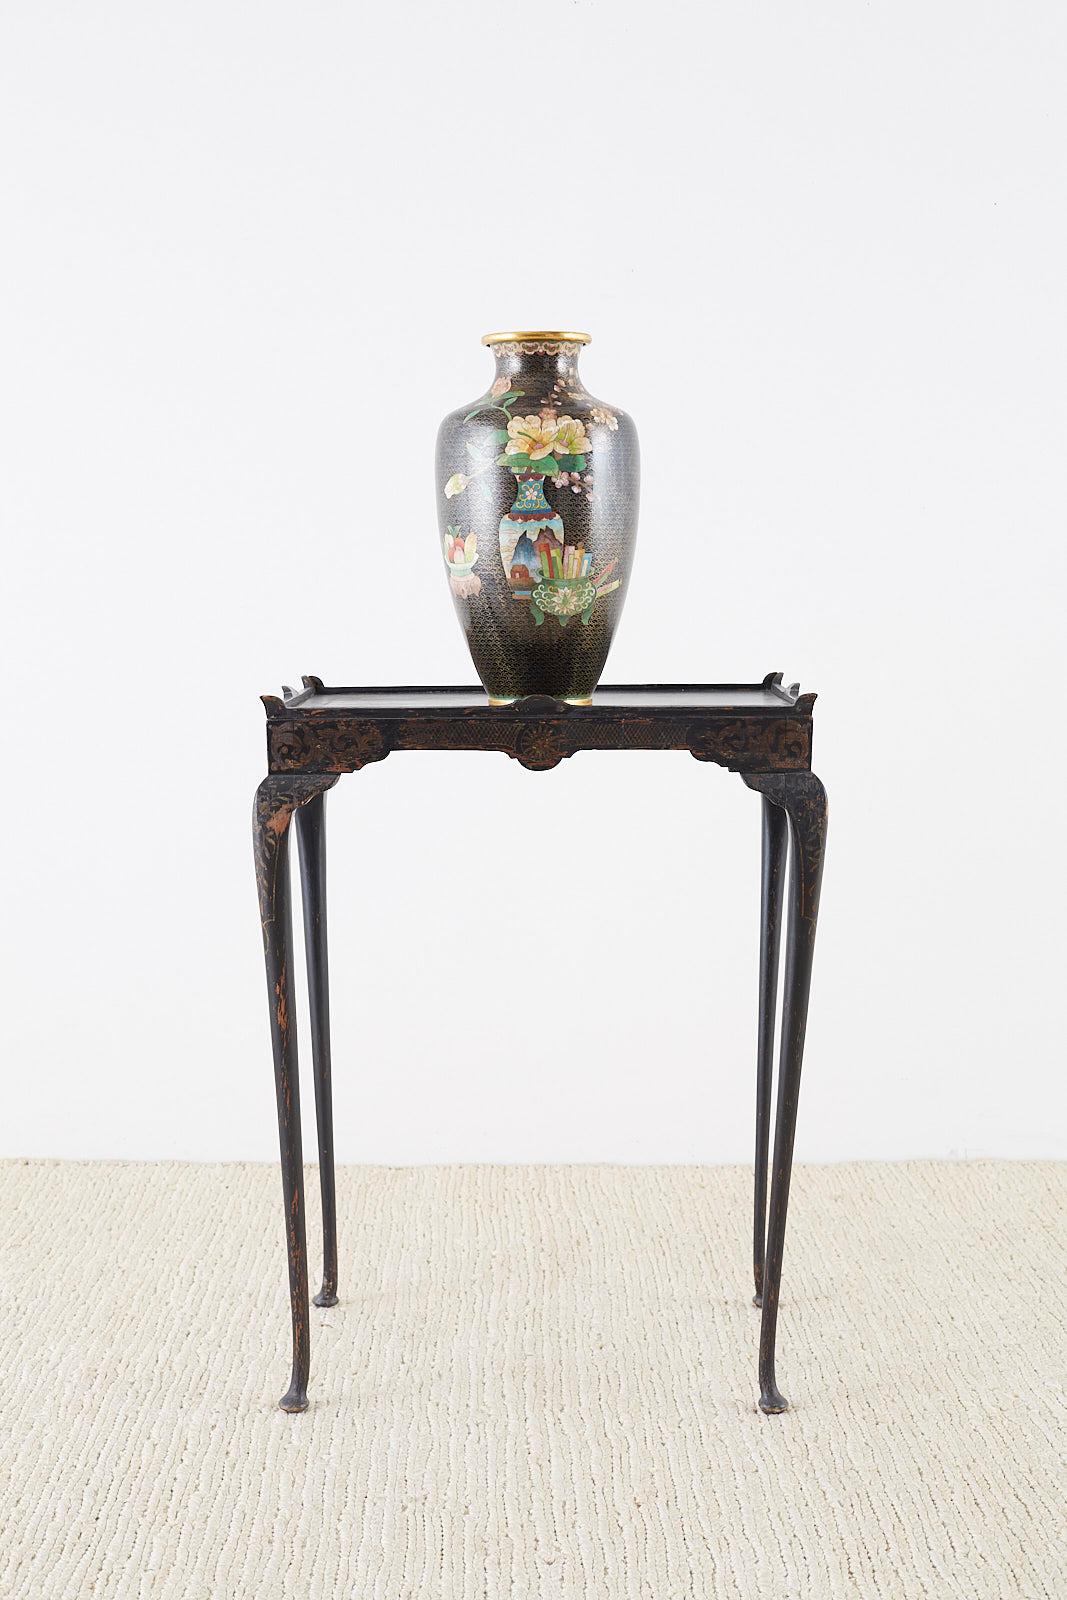 Dramatische große chinesische Cloisonné-Vase mit einem Blumenvasen-Dekor auf der einen Seite und einem Kürbis auf der Rückseite. Das Dekor hebt sich von einem schwarzen Grund ab, wobei Wolkenmuster die gesamte Vase bedecken. Der balusterförmige